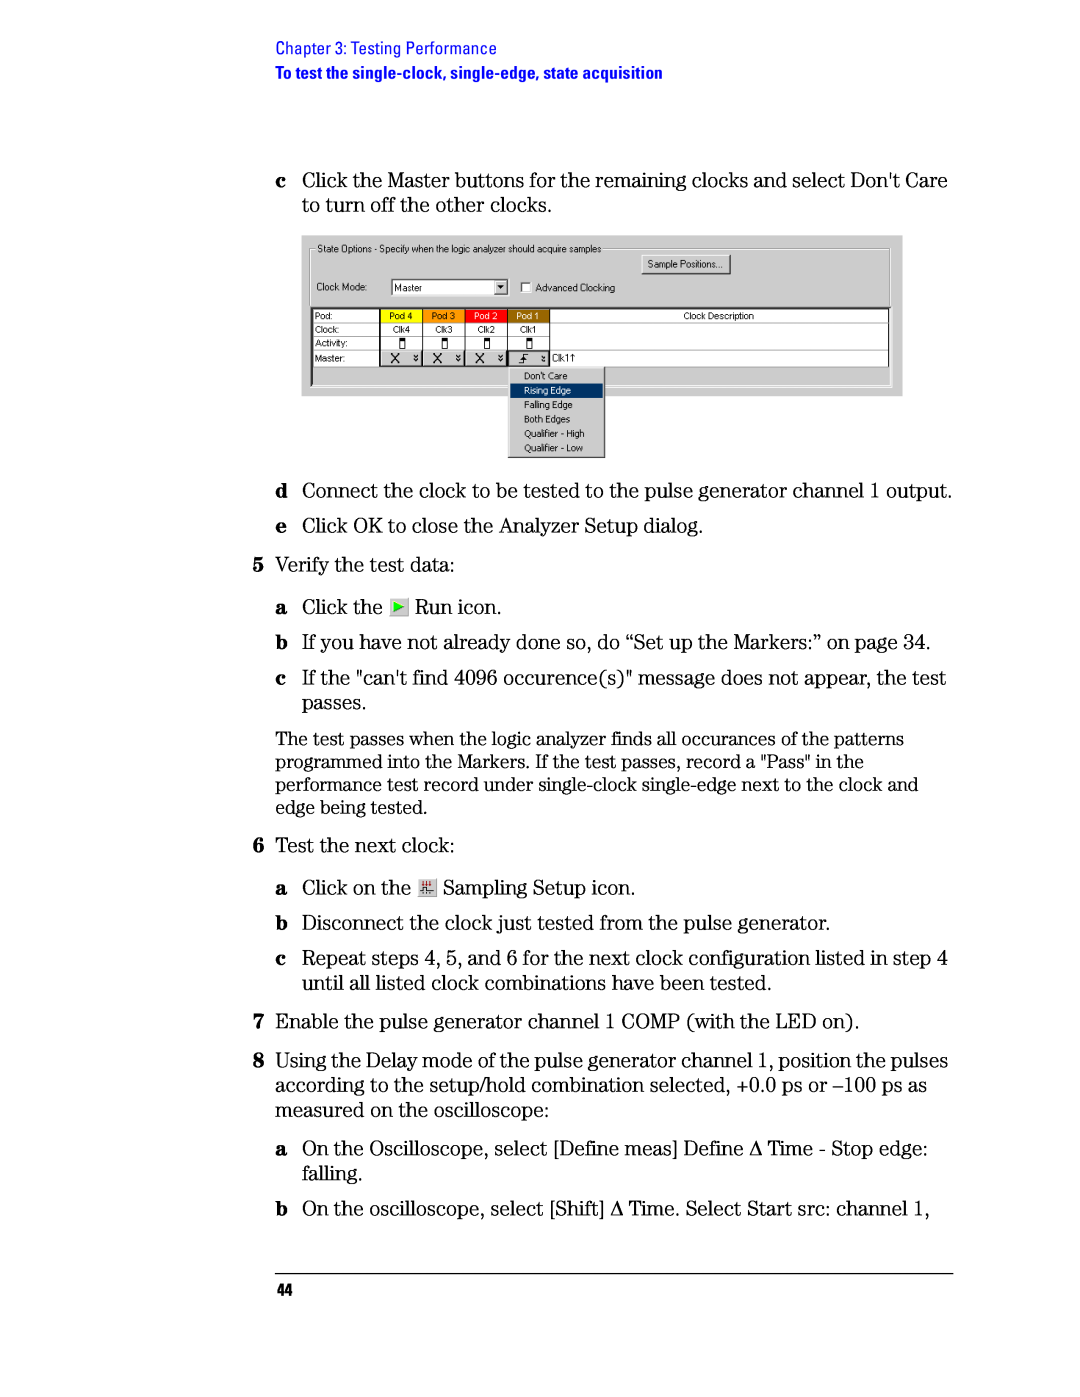 Agilent Technologies 1680, 1690 manual e Click OK to close the Analyzer Setup dialog 5 Verify the test data 